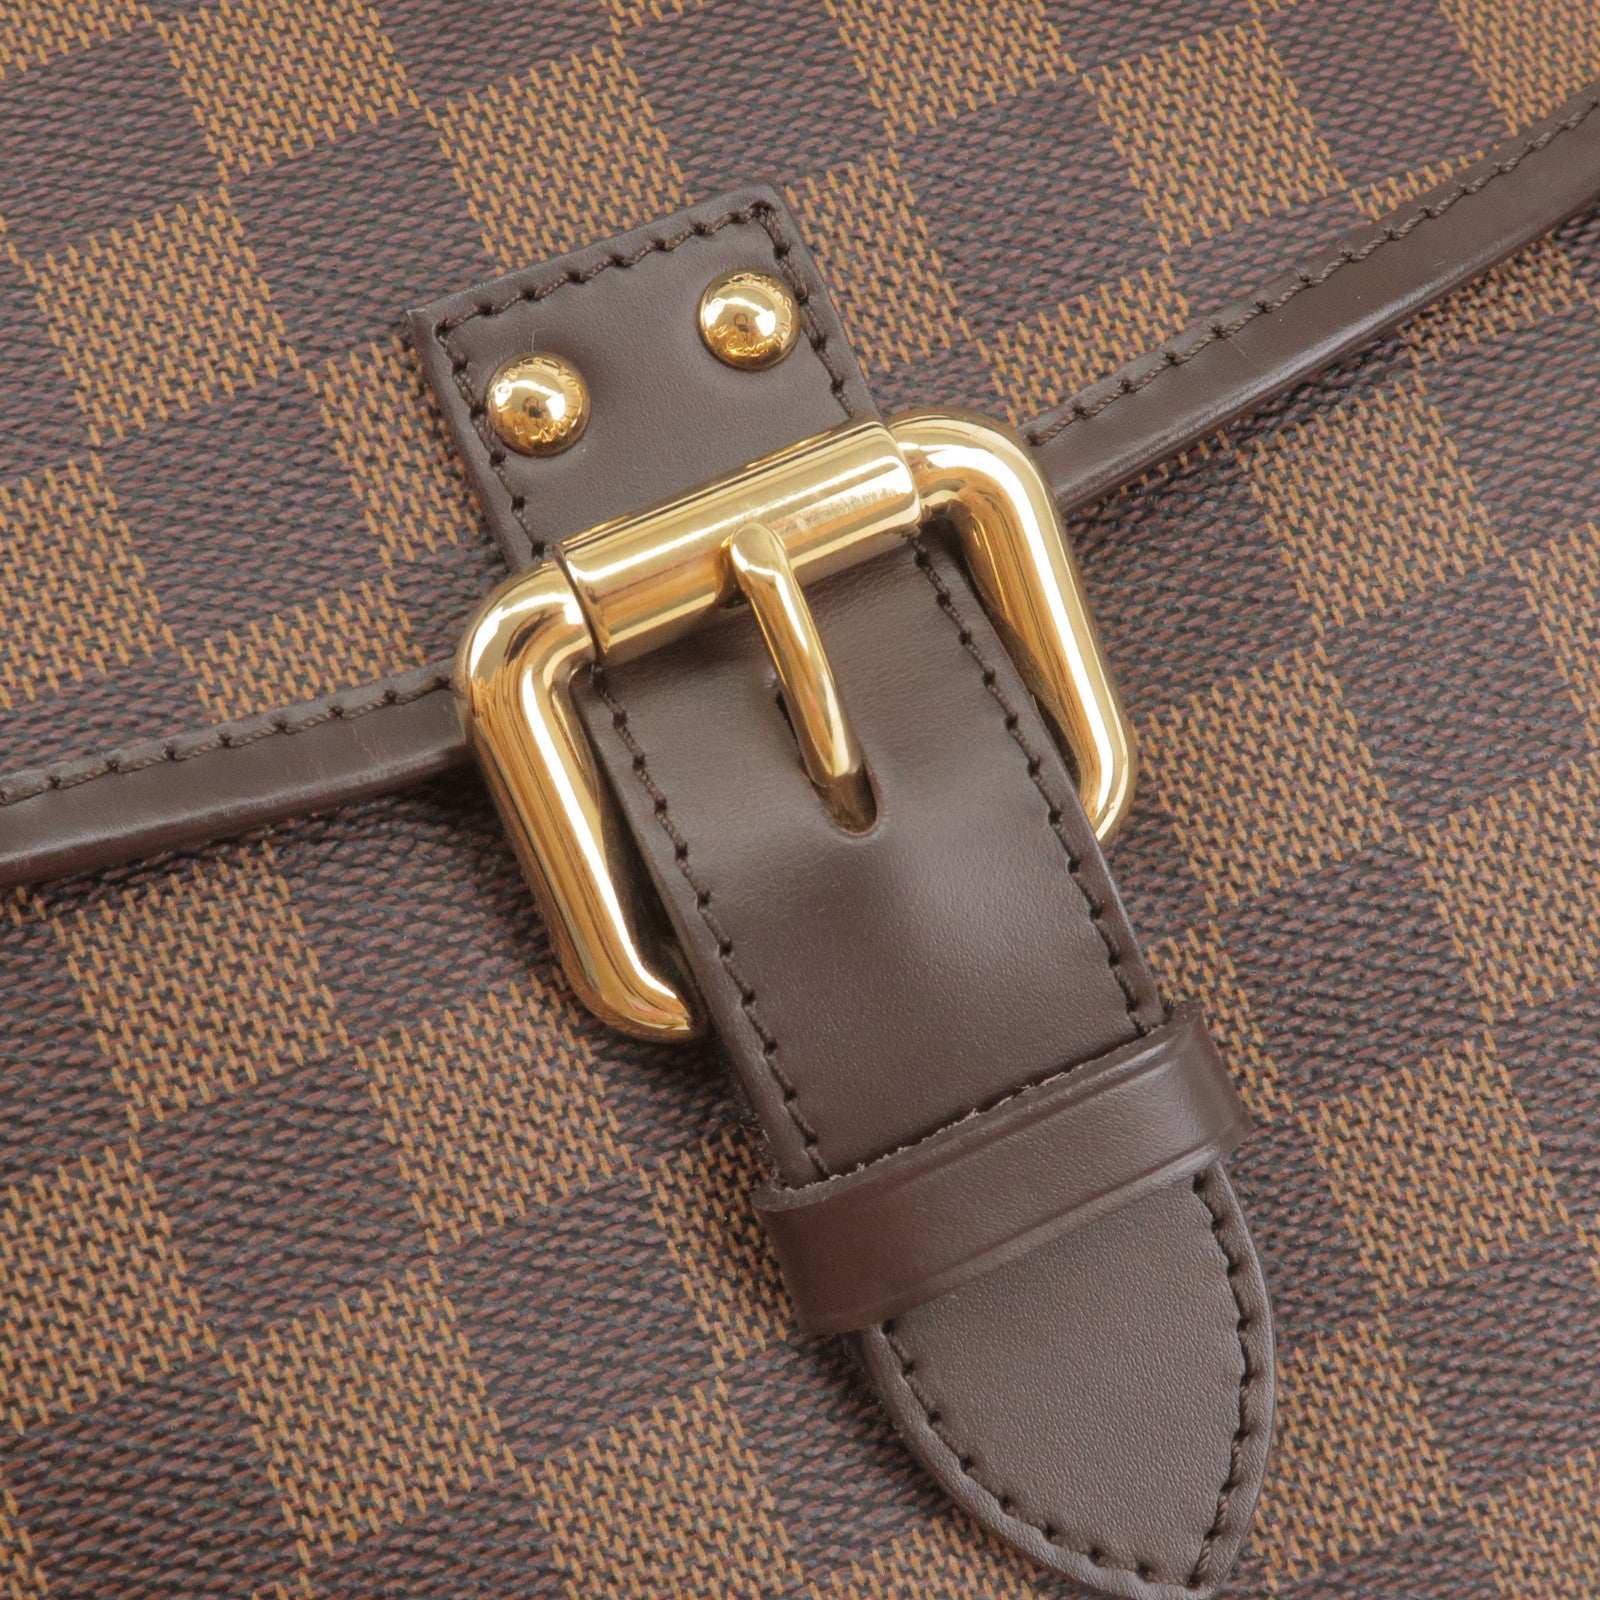 Pre-Owned Louis Vuitton Eva Damier Ebene Crossbody Bag - Very Good  Condition 